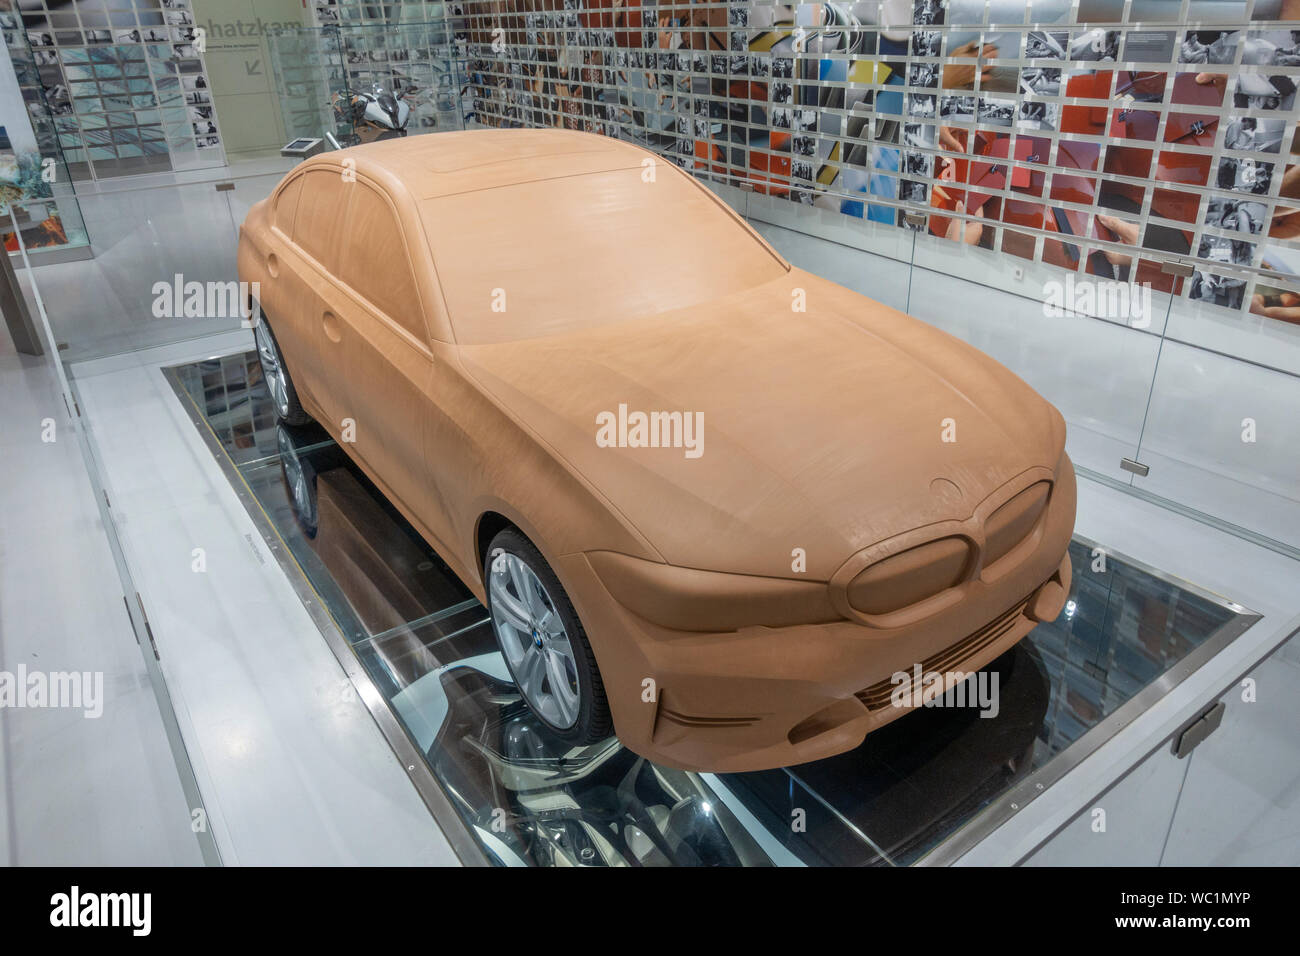 Modèle en argile de la BMW Série 3 (G20) sur l'affichage dans le Musée BMW, Munich, Bavière, Allemagne. Banque D'Images